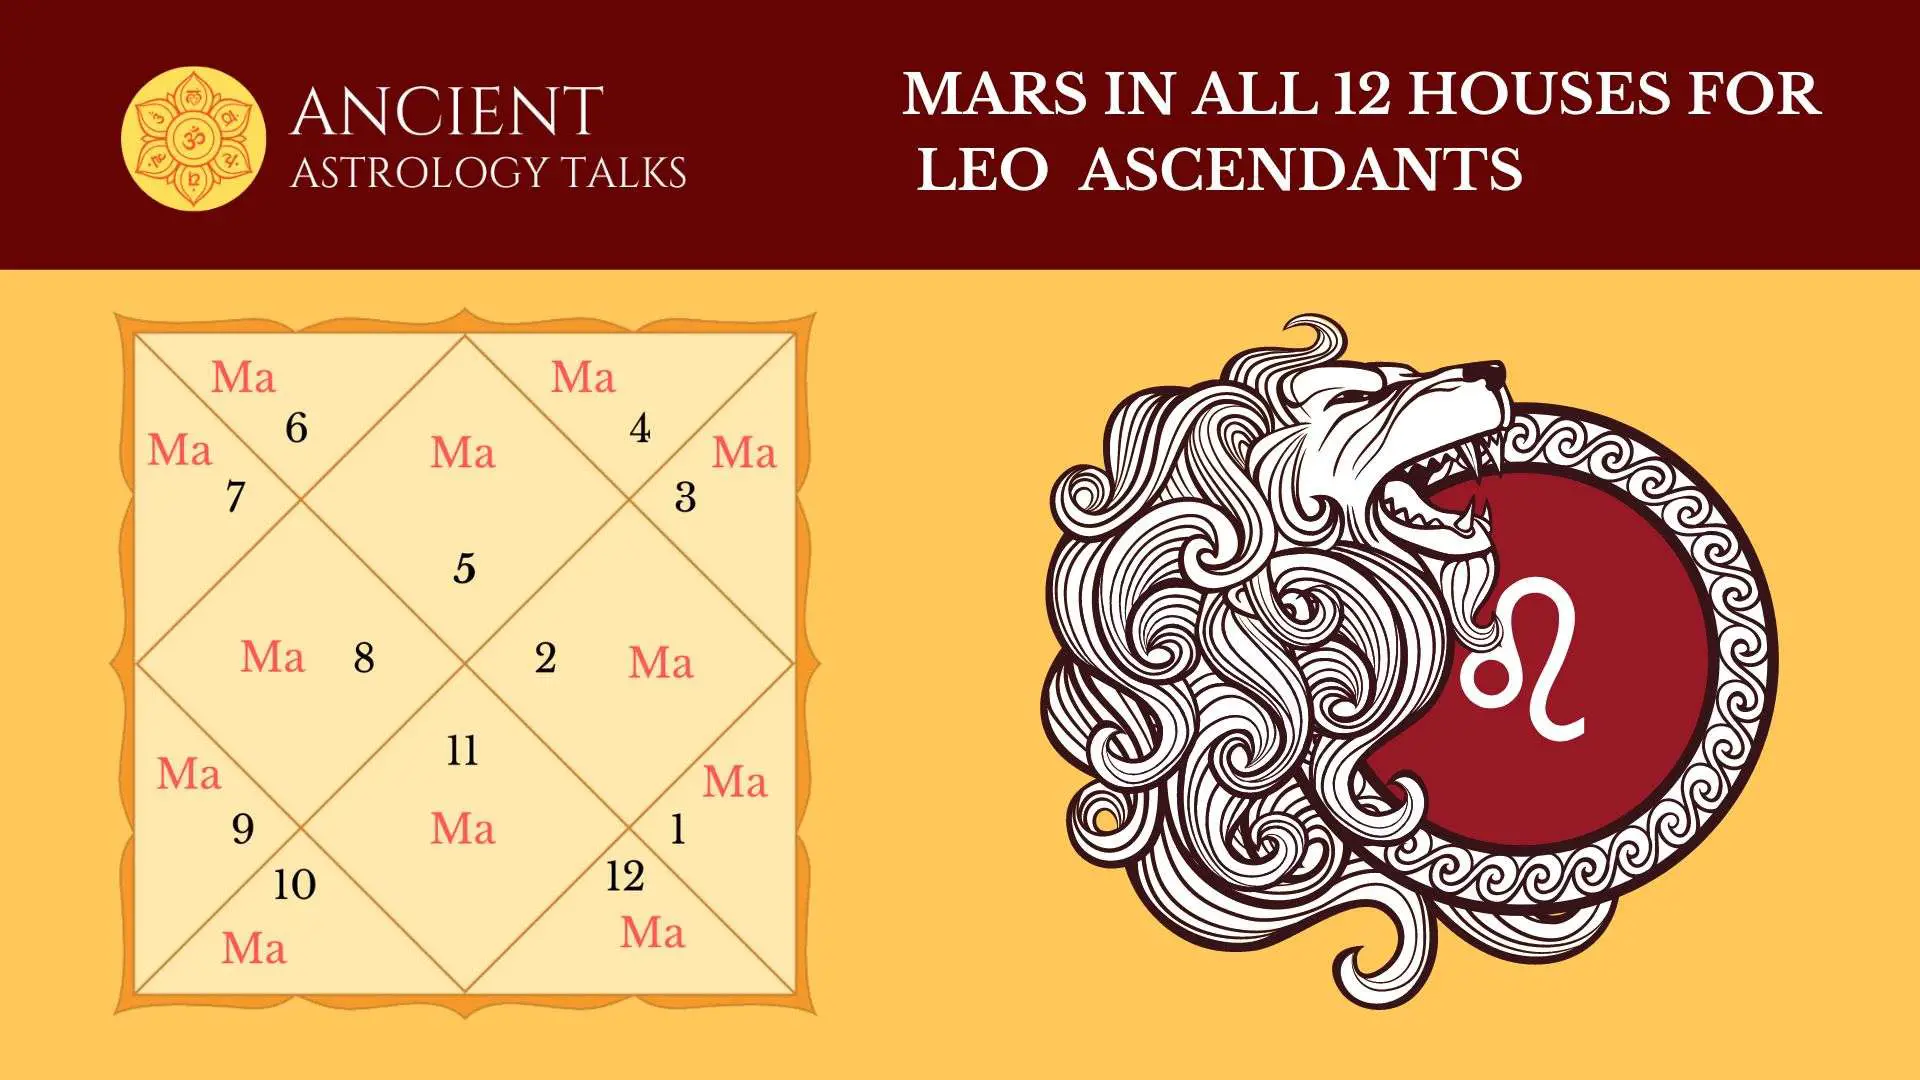 Mars in All 12 Houses for Leo Ascendants